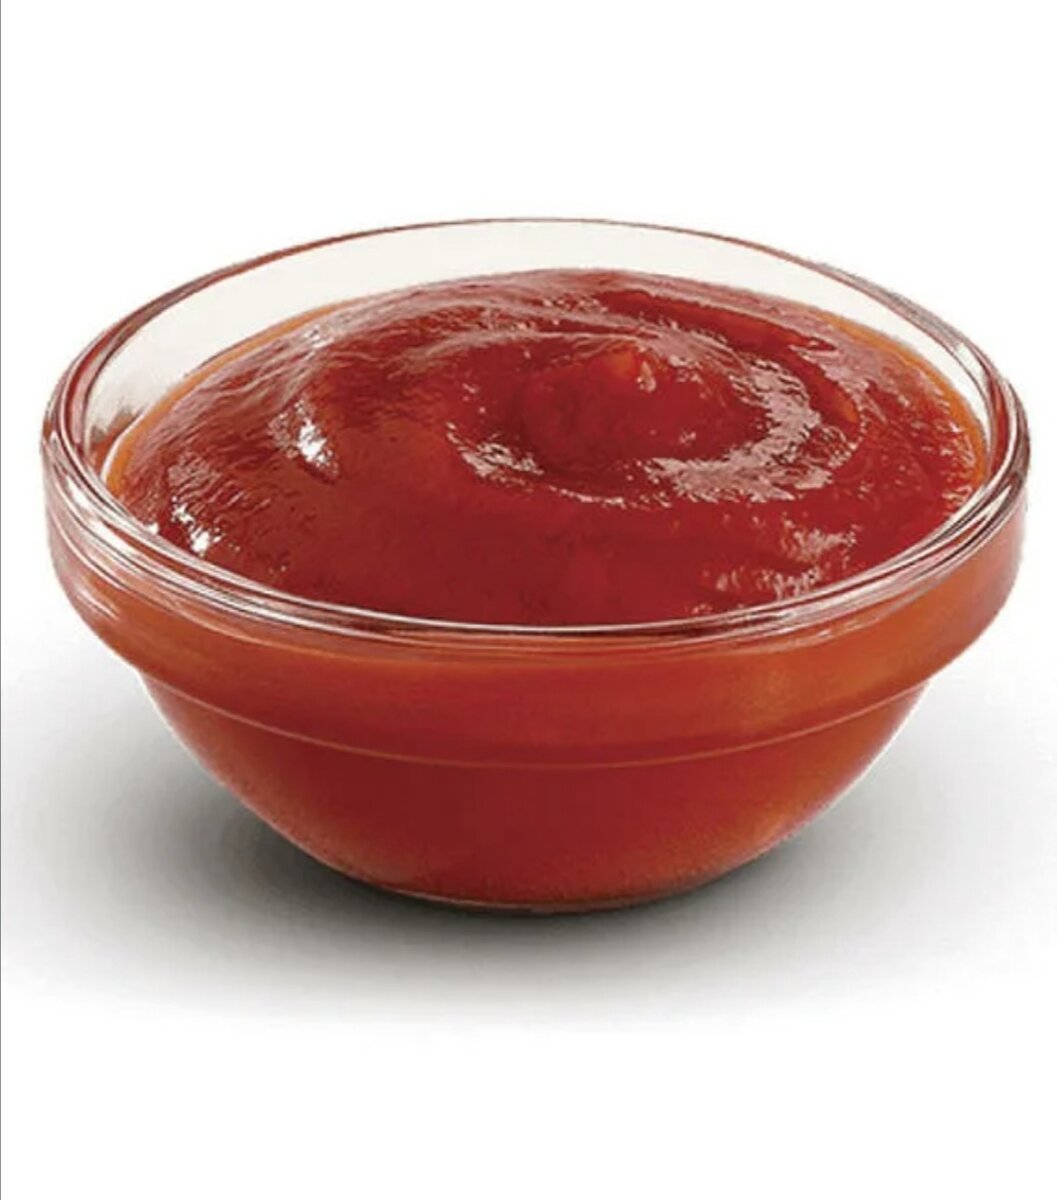 томатный соус или кетчуп для пиццы фото 87